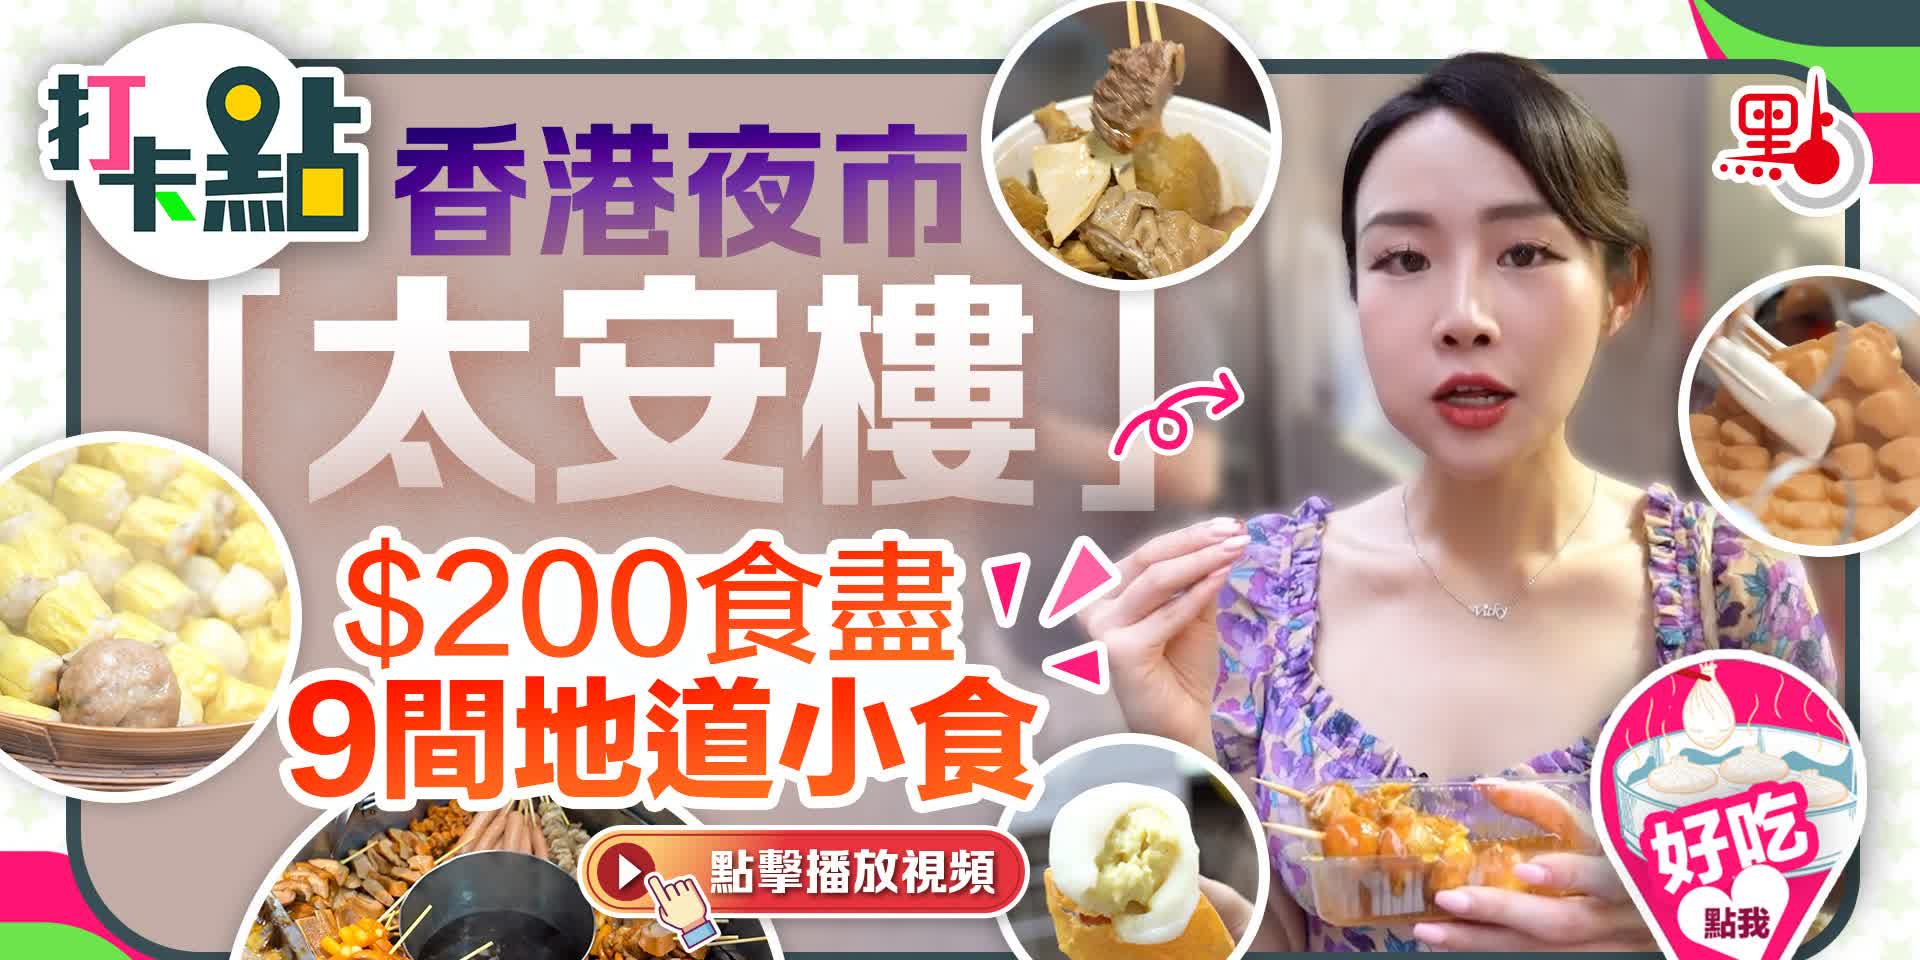 香港夜市「太安樓」 200元食盡9間地道小食【打卡點ep68】